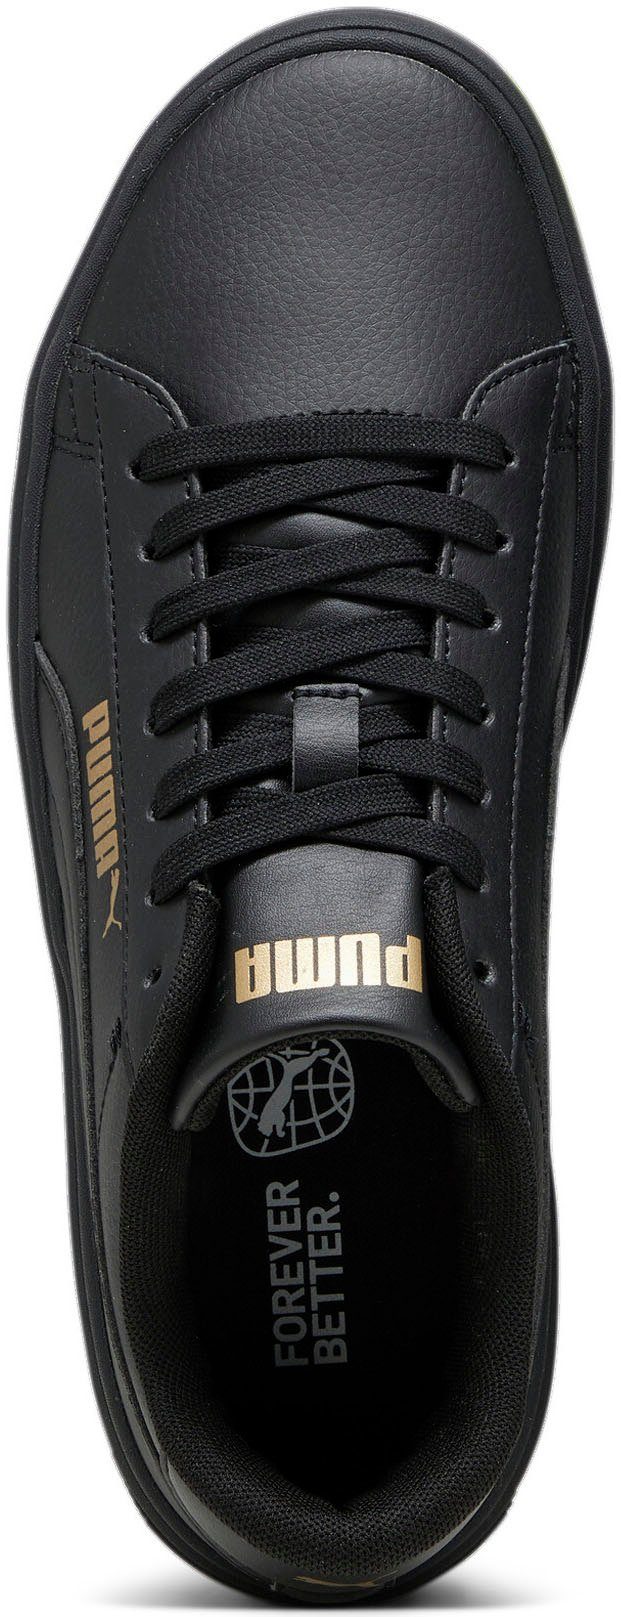 v3 Sneaker black PUMA Platform gold Smash